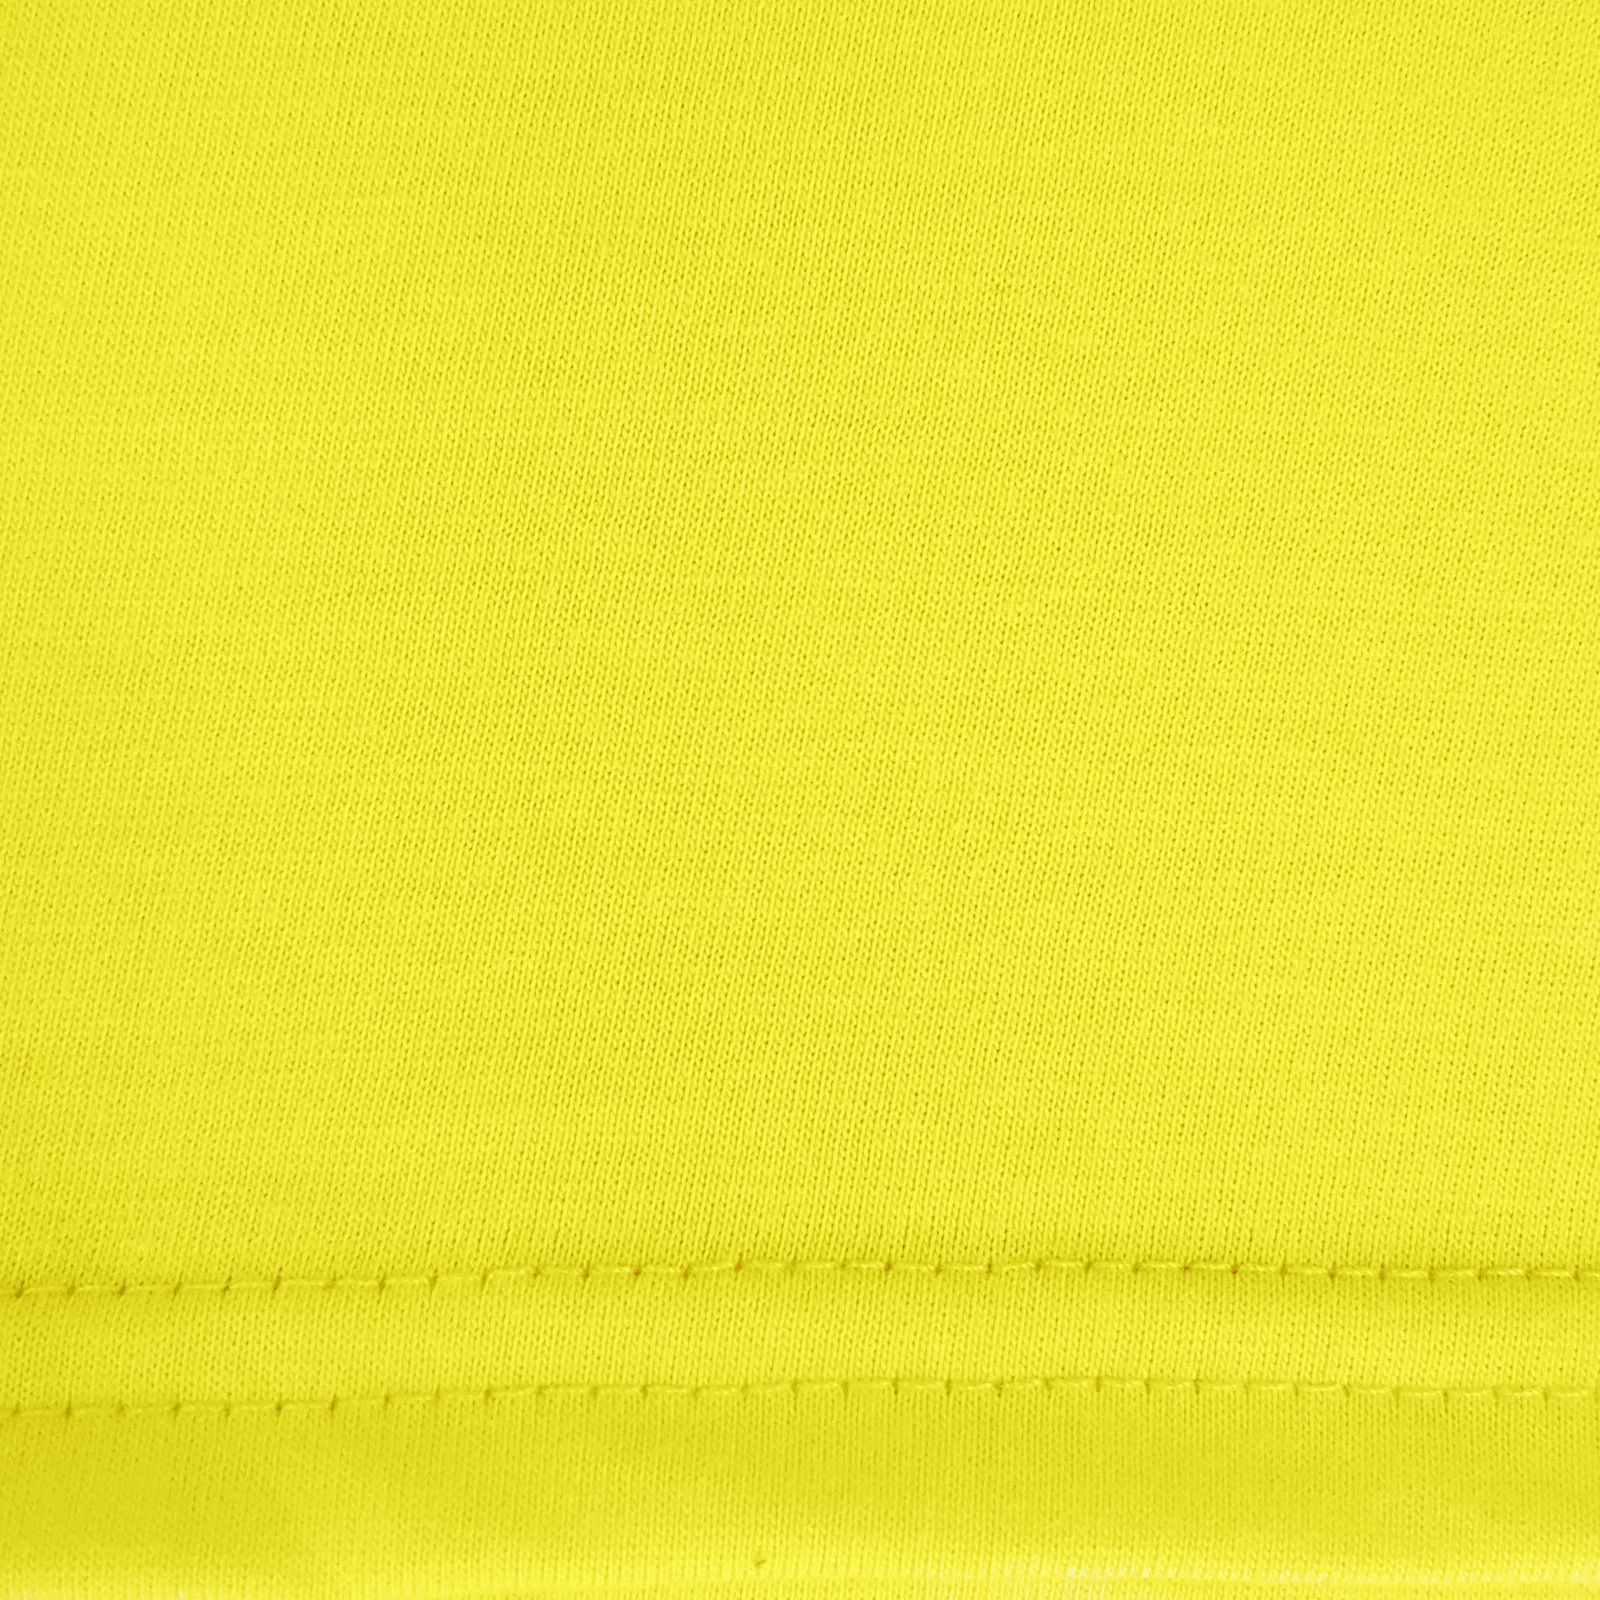 زیرپوش رکابی مردانه ماییلدا مدل پنبه ای کد 4712 رنگ زرد -  - 8